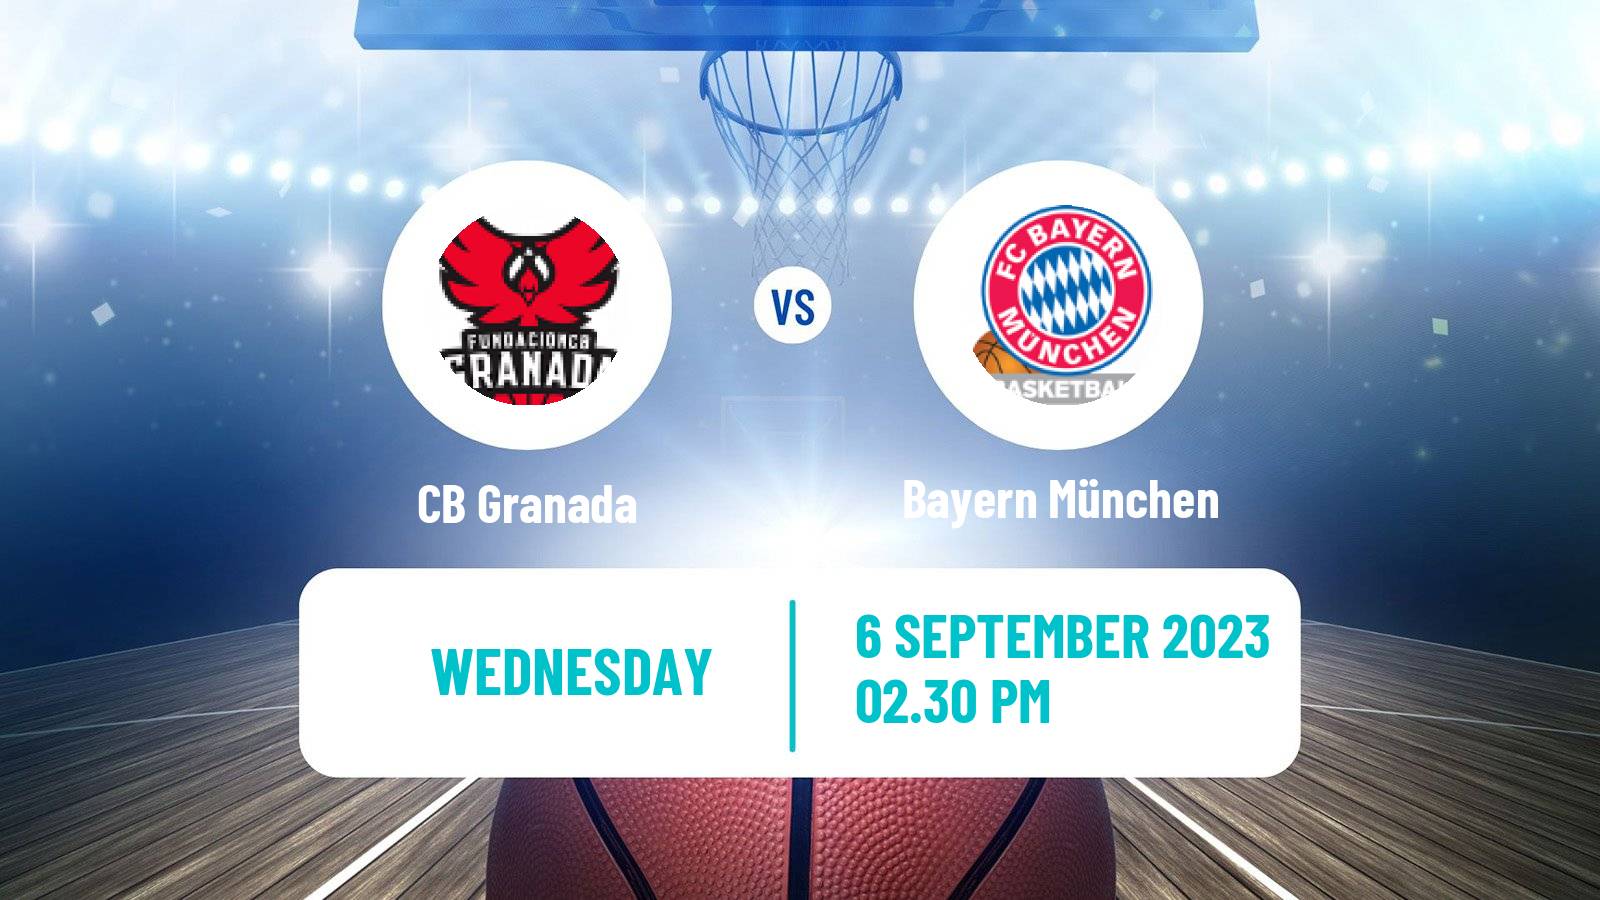 Basketball Club Friendly Basketball Granada - Bayern München